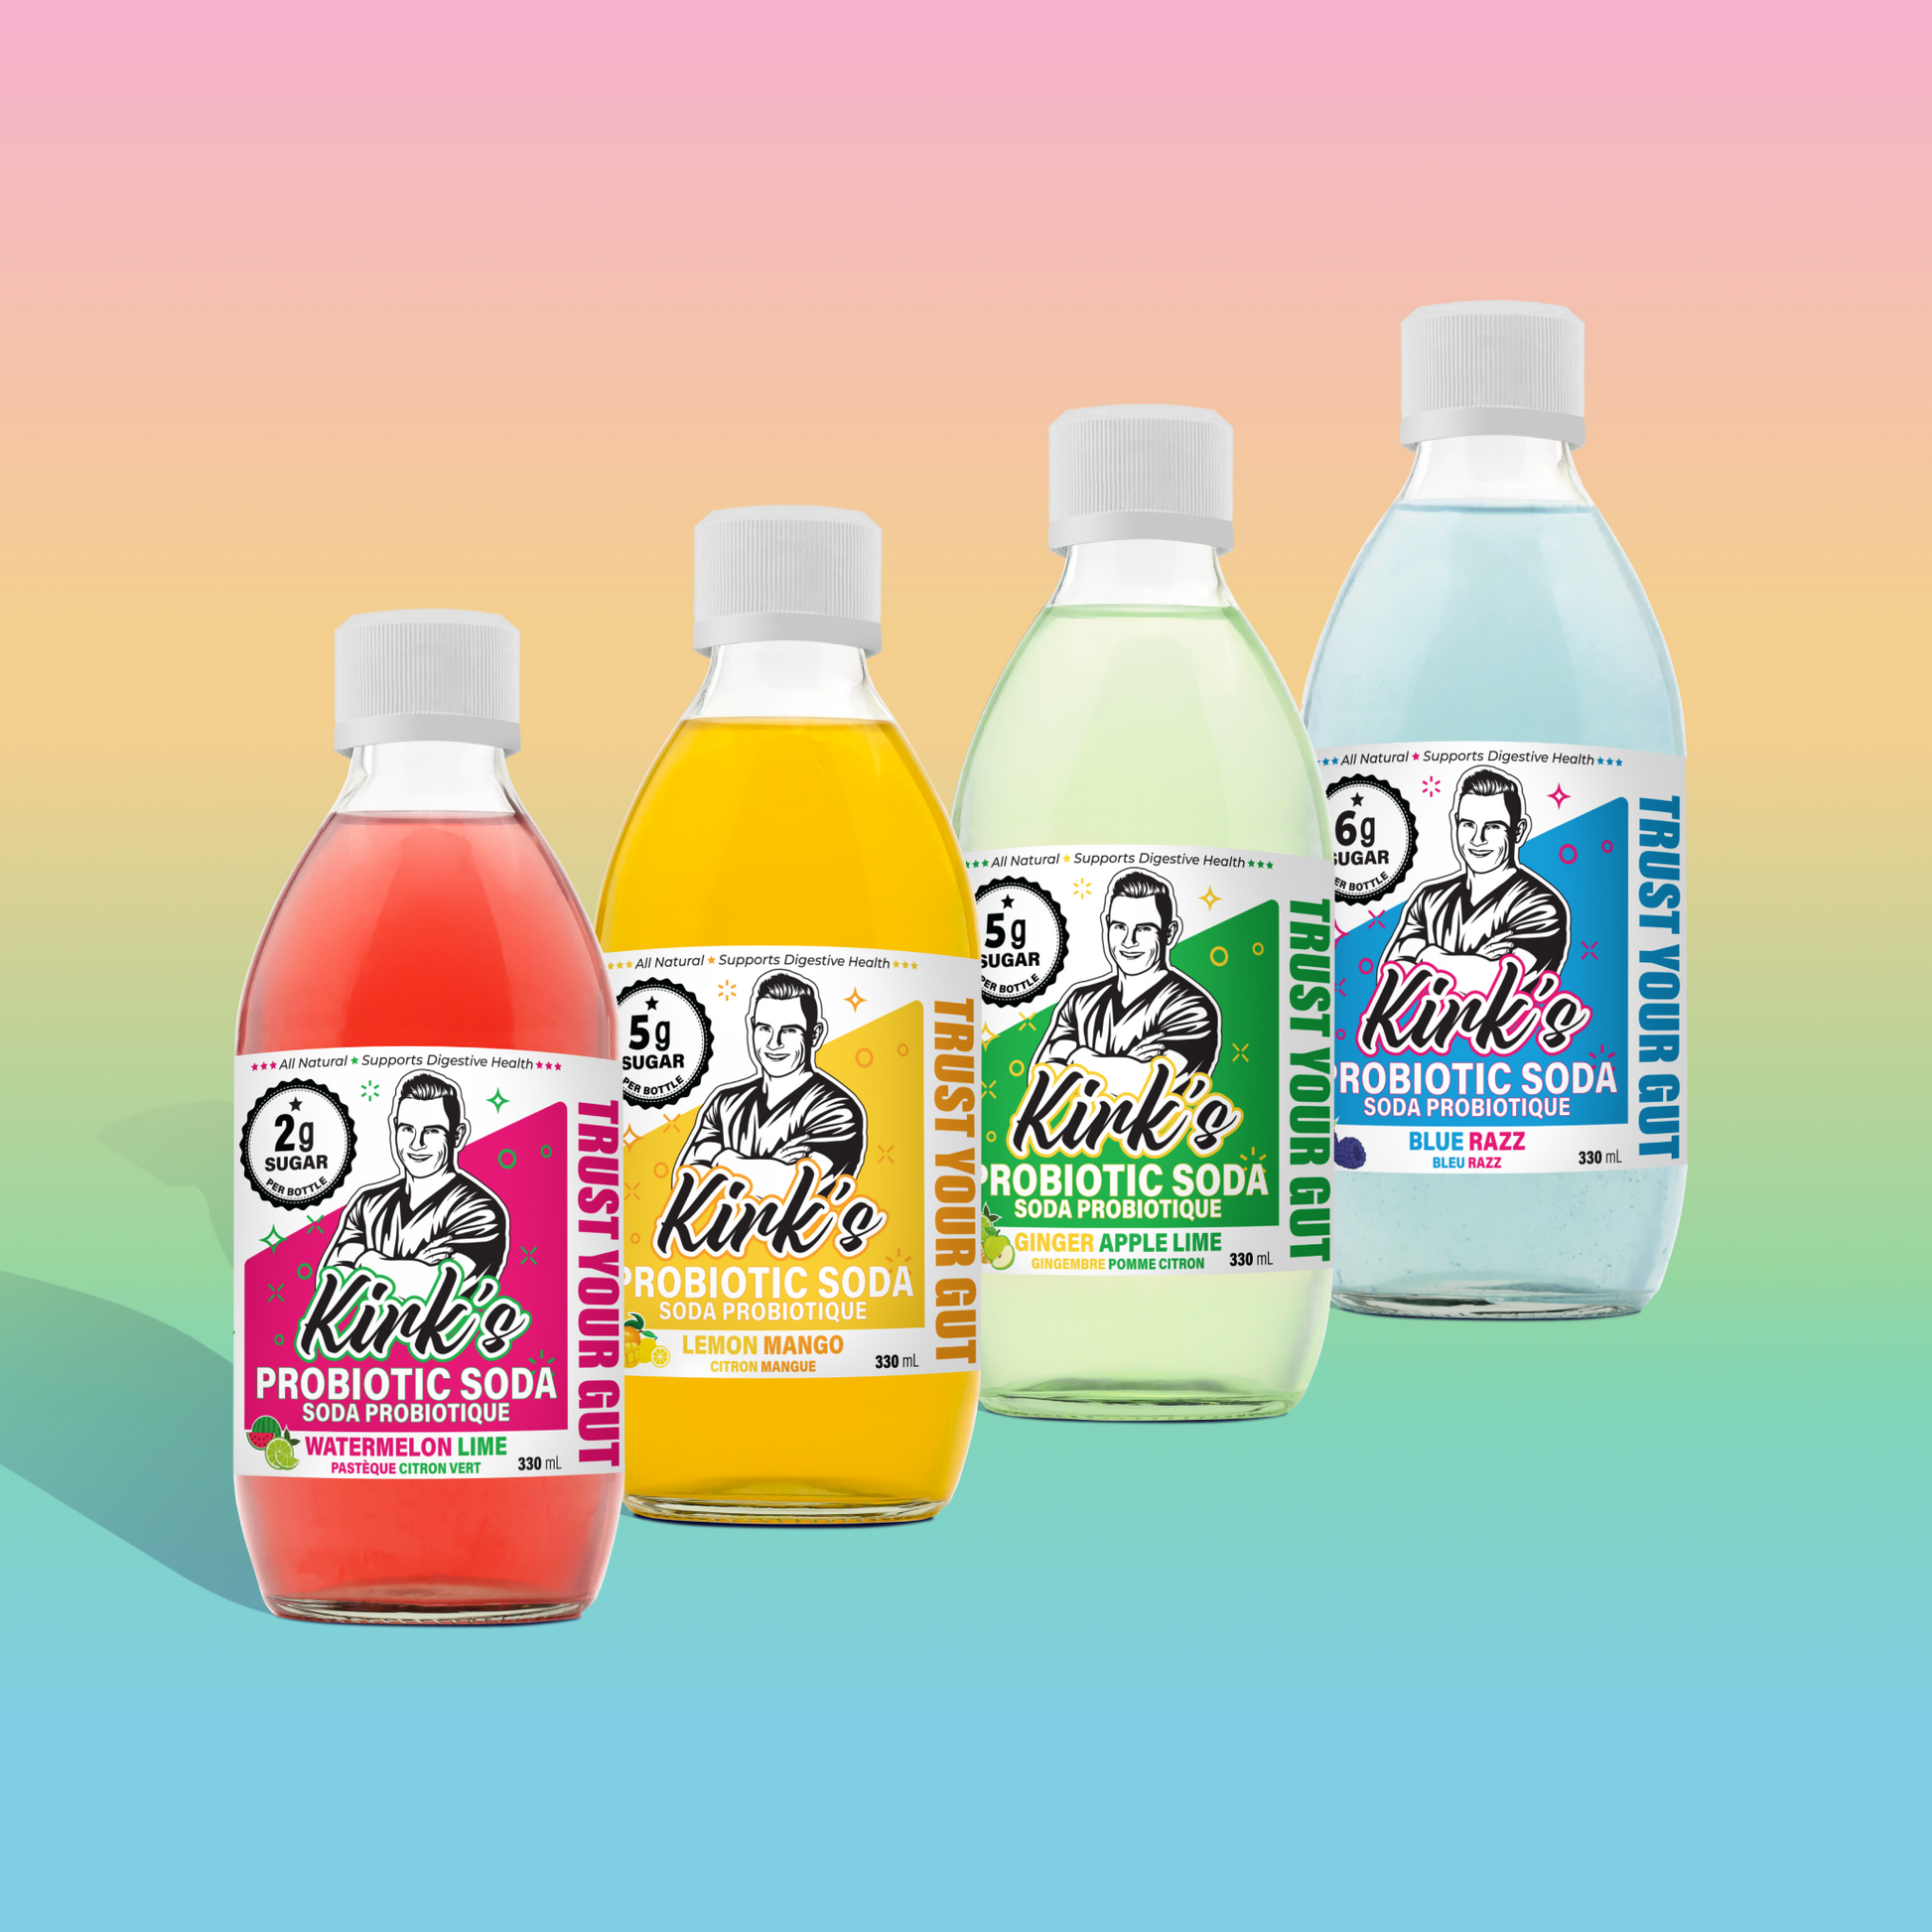 Multiple bottles of Kirk's probiotic soda in various flavors